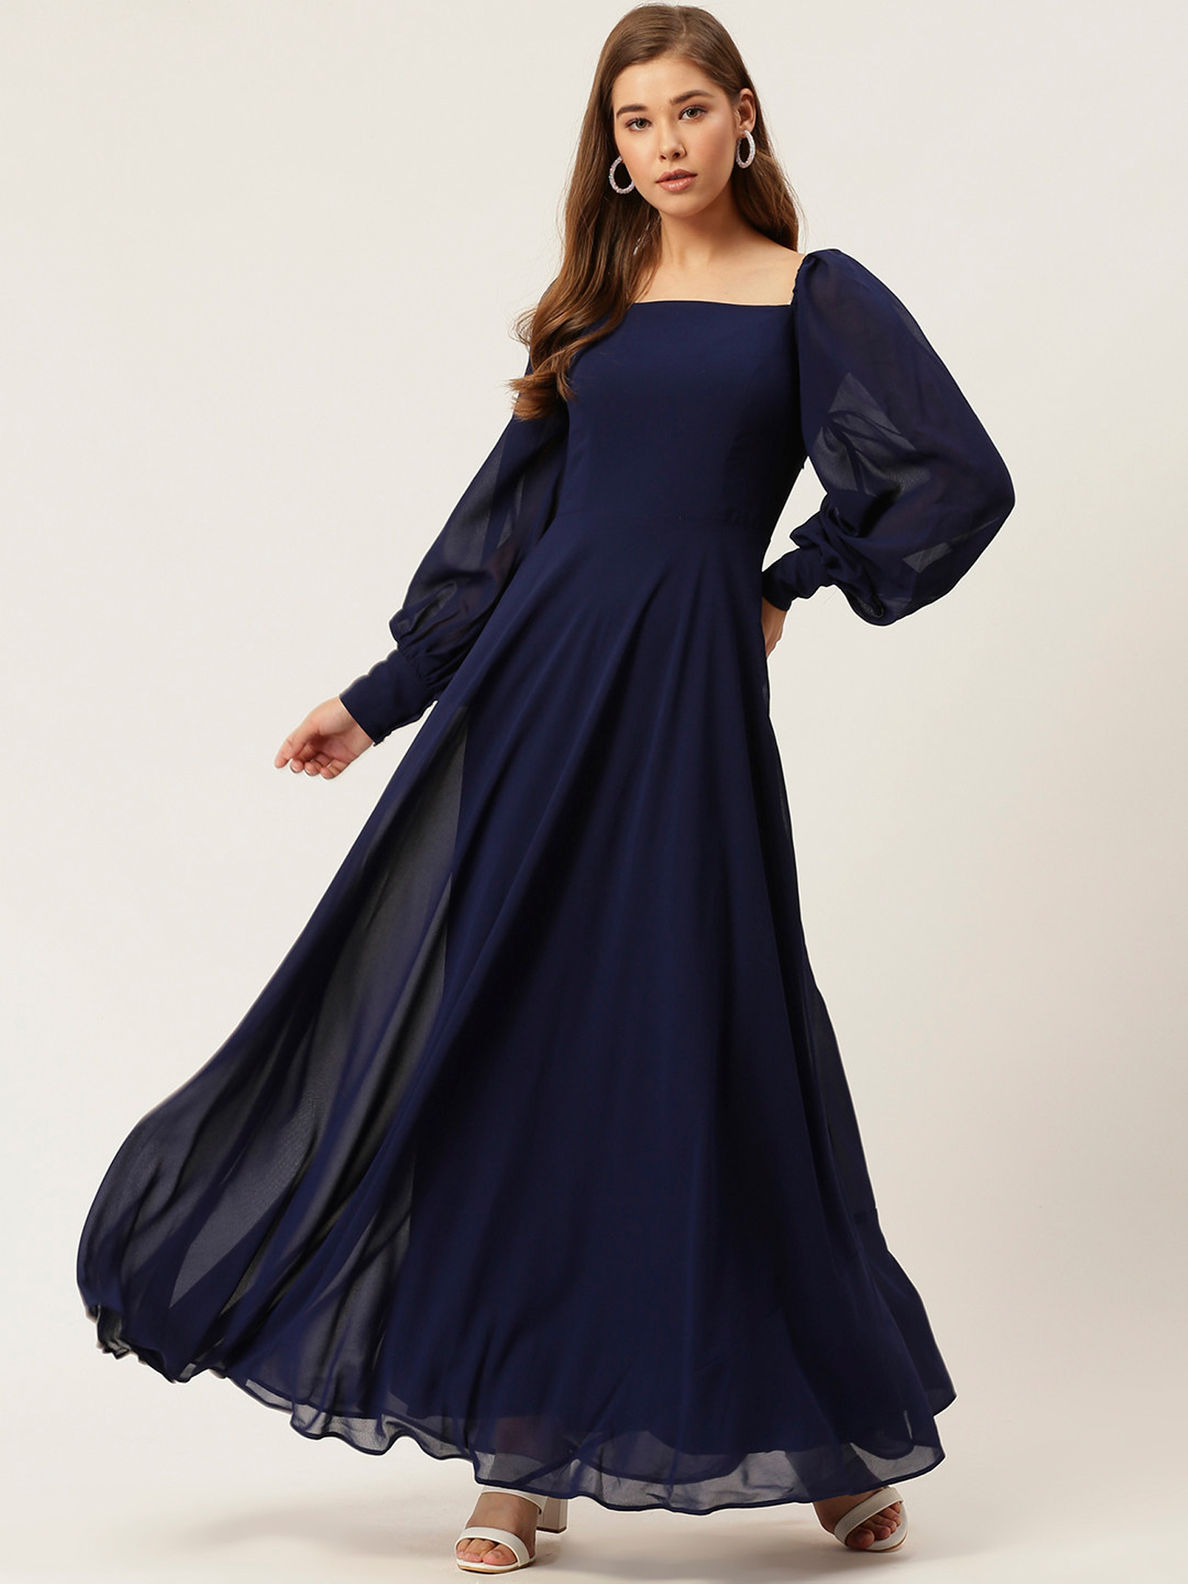 navy blue evening dress: Women's Dresses | Dillard's